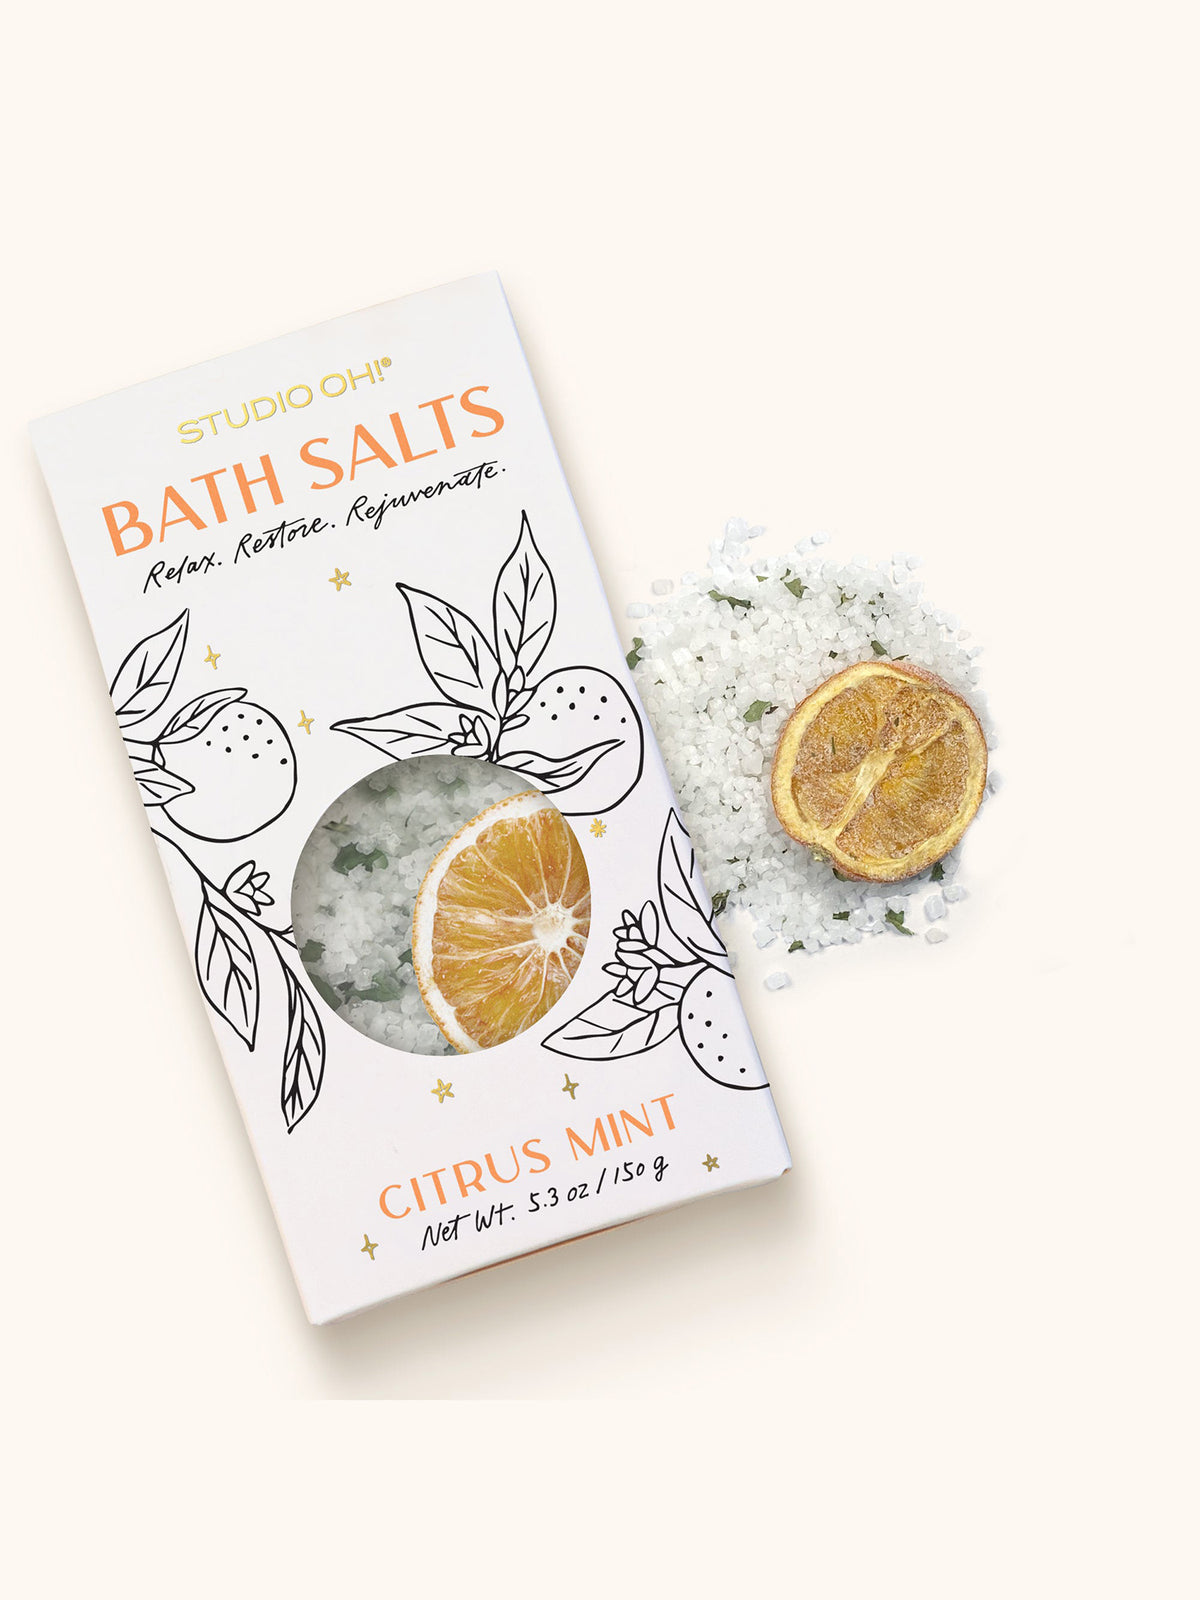 Citrus Mint Scented Bath Salts